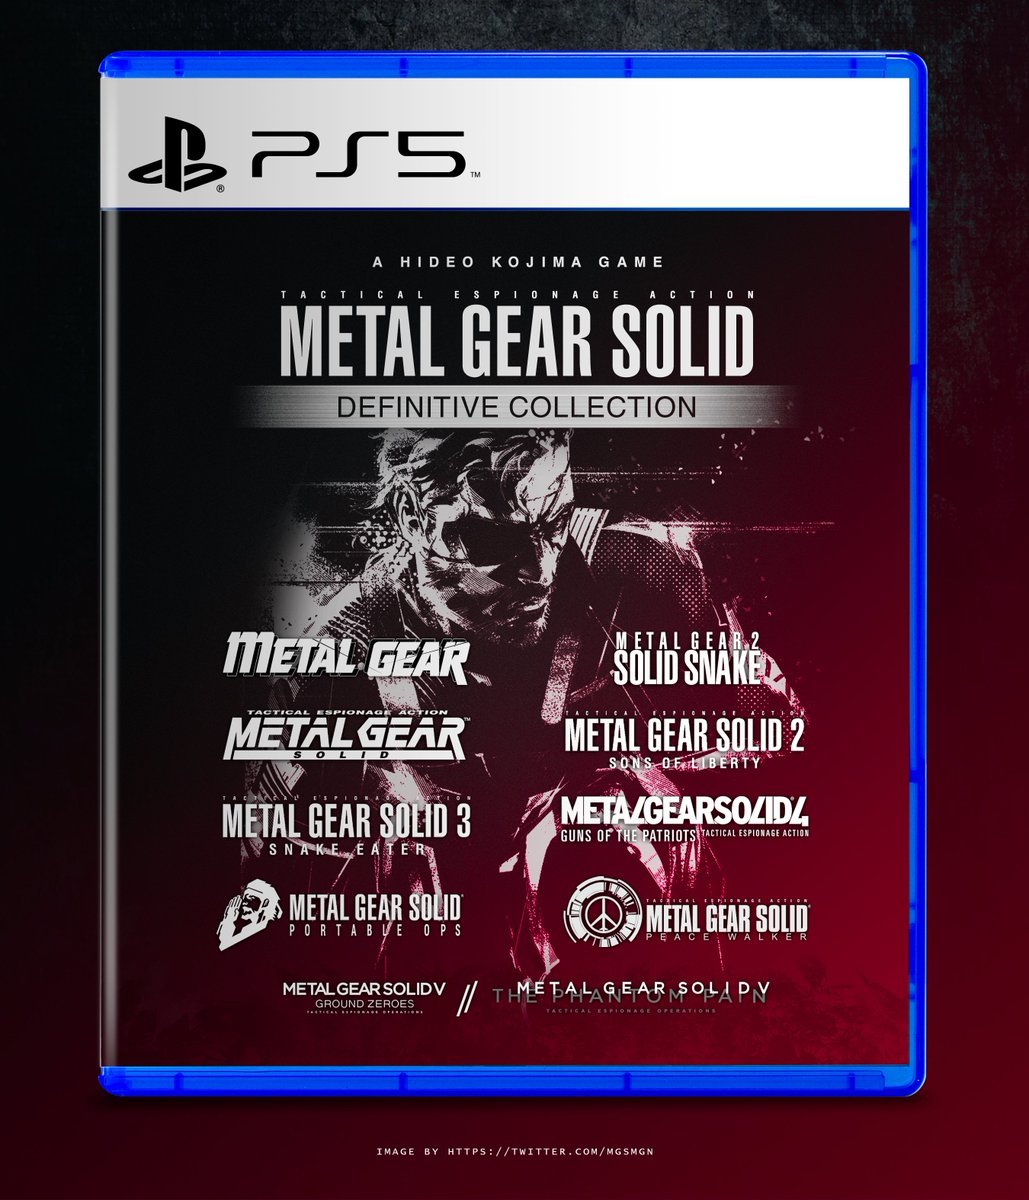 Zuby_Tech on X: Looks Like Metal Gear Solid Will Return To PlayStation! # MetalGearSolid #MetalGear #MGS #PS5 #PlayStation5 #PlayStation  #PlayHasNoLimits  / X